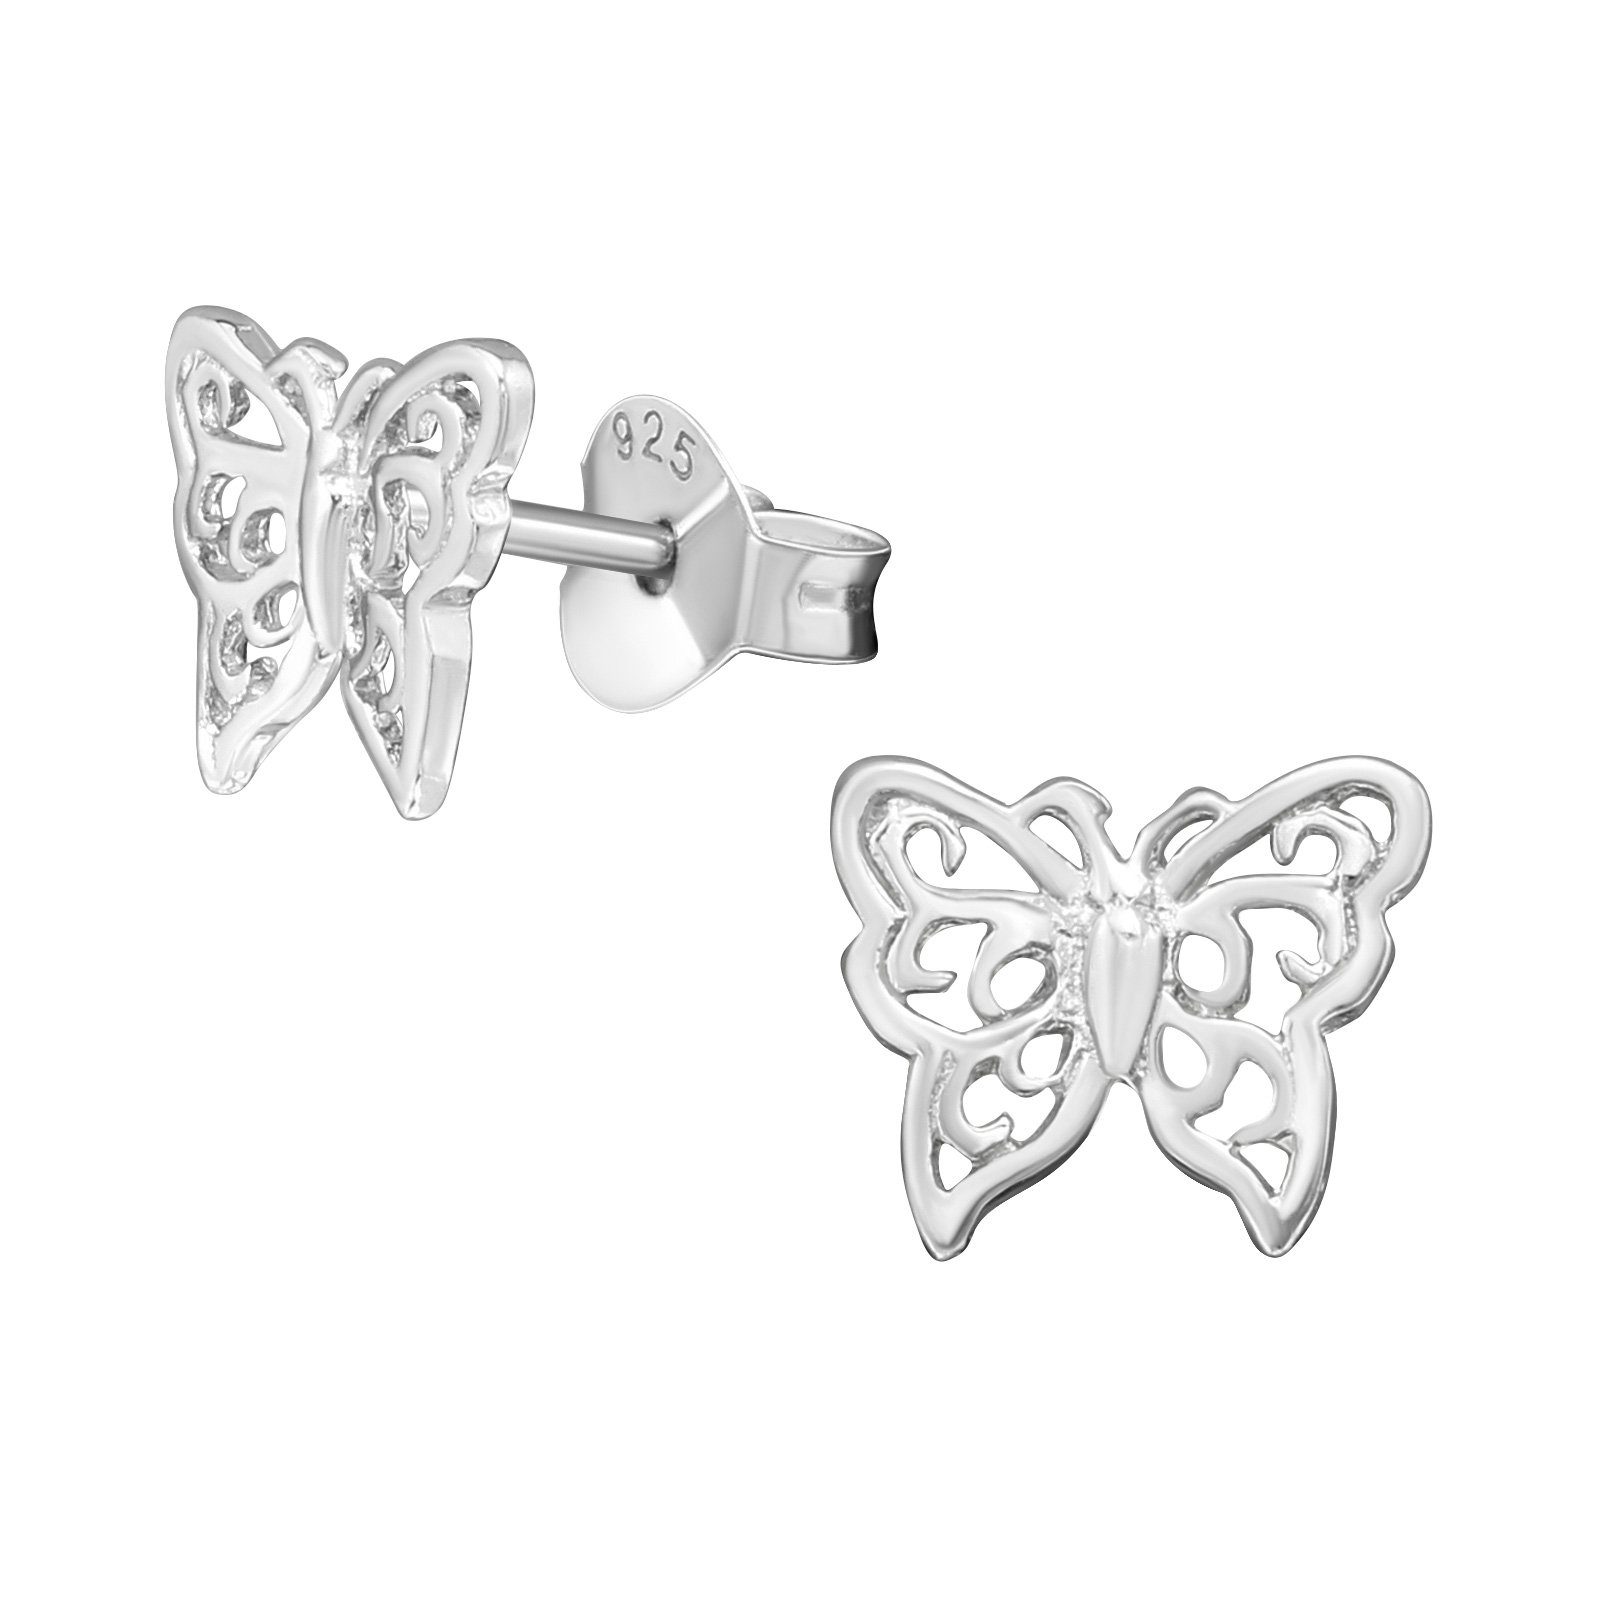 BUNGSA Ohrring-Set Ohrstecker Schmetterling 925 Silber Damen (1 Paar (2 Stück), 2-tlg., inkl. Schmuckbeutel aus Organza), Ohrschmuck Ohrringe